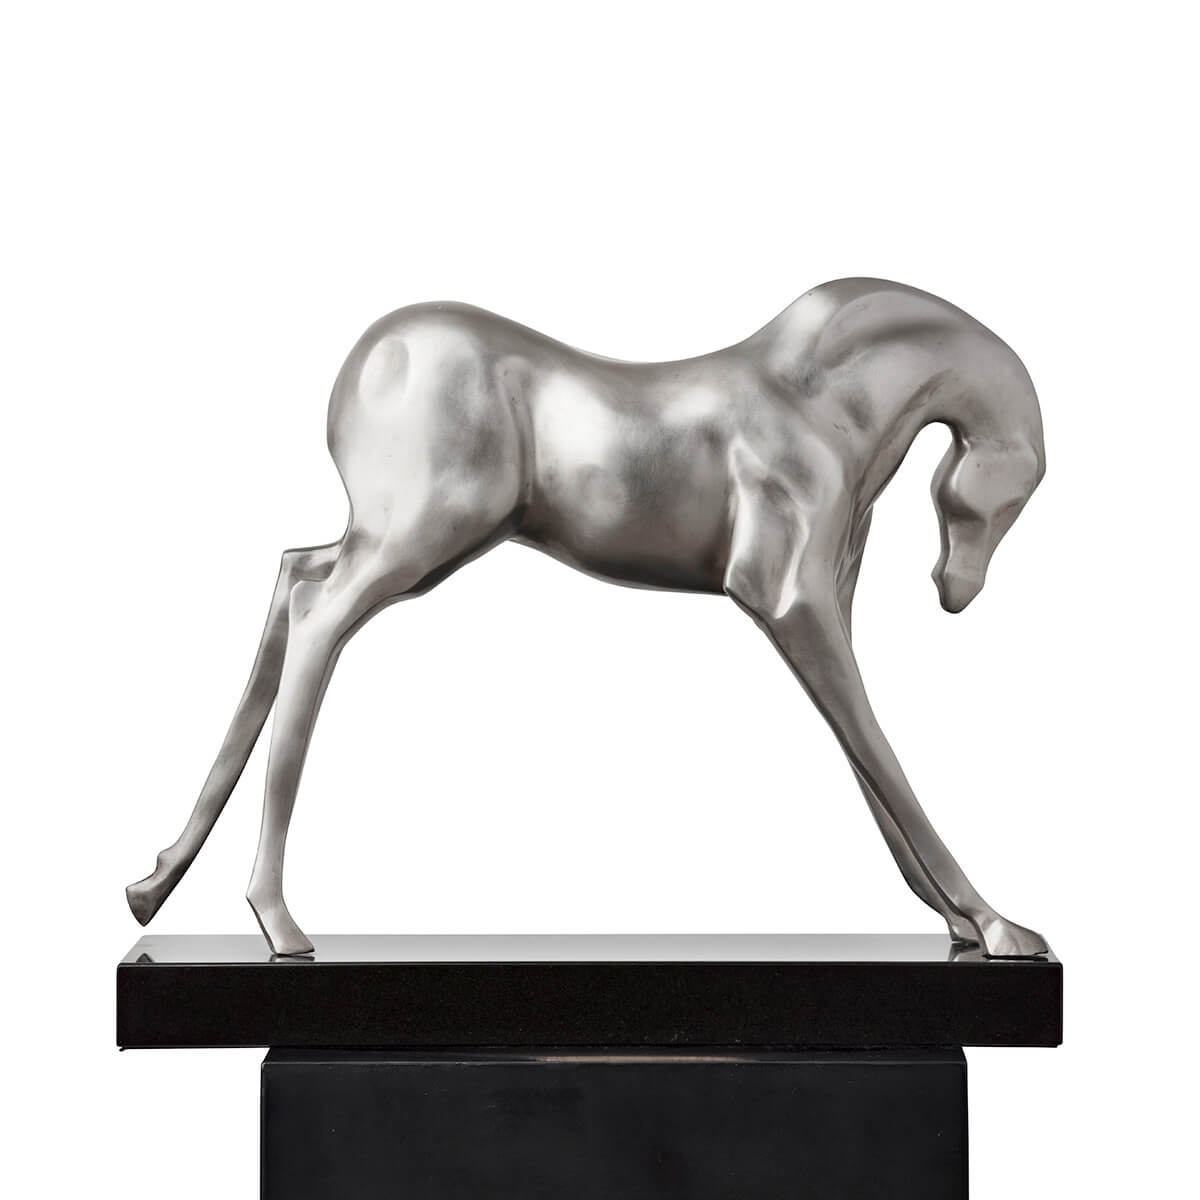 Robert-Helle-Sculpture-Gallery-Horse-3-1200x1200